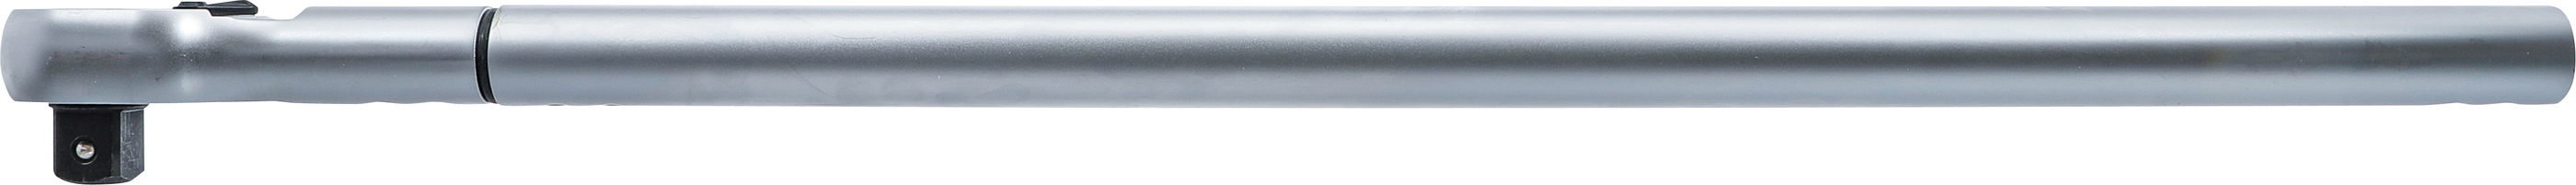 BGS Drehmomentschlüssel | Abtrieb Außenvierkant 25 mm (1") | 300 - 1500 Nm